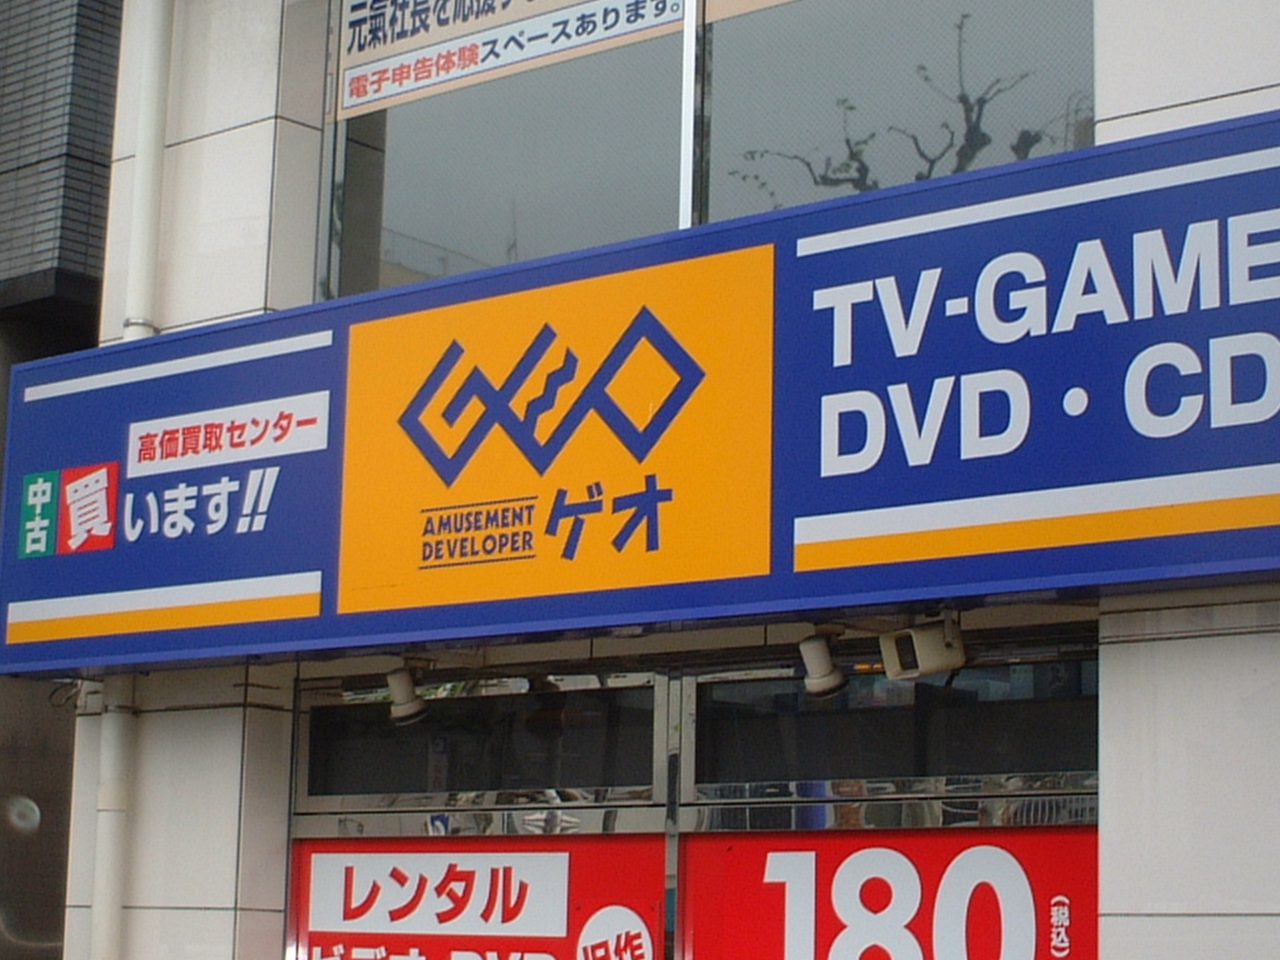 Rental video. GEO Kitashinjuku shop 796m up (video rental)